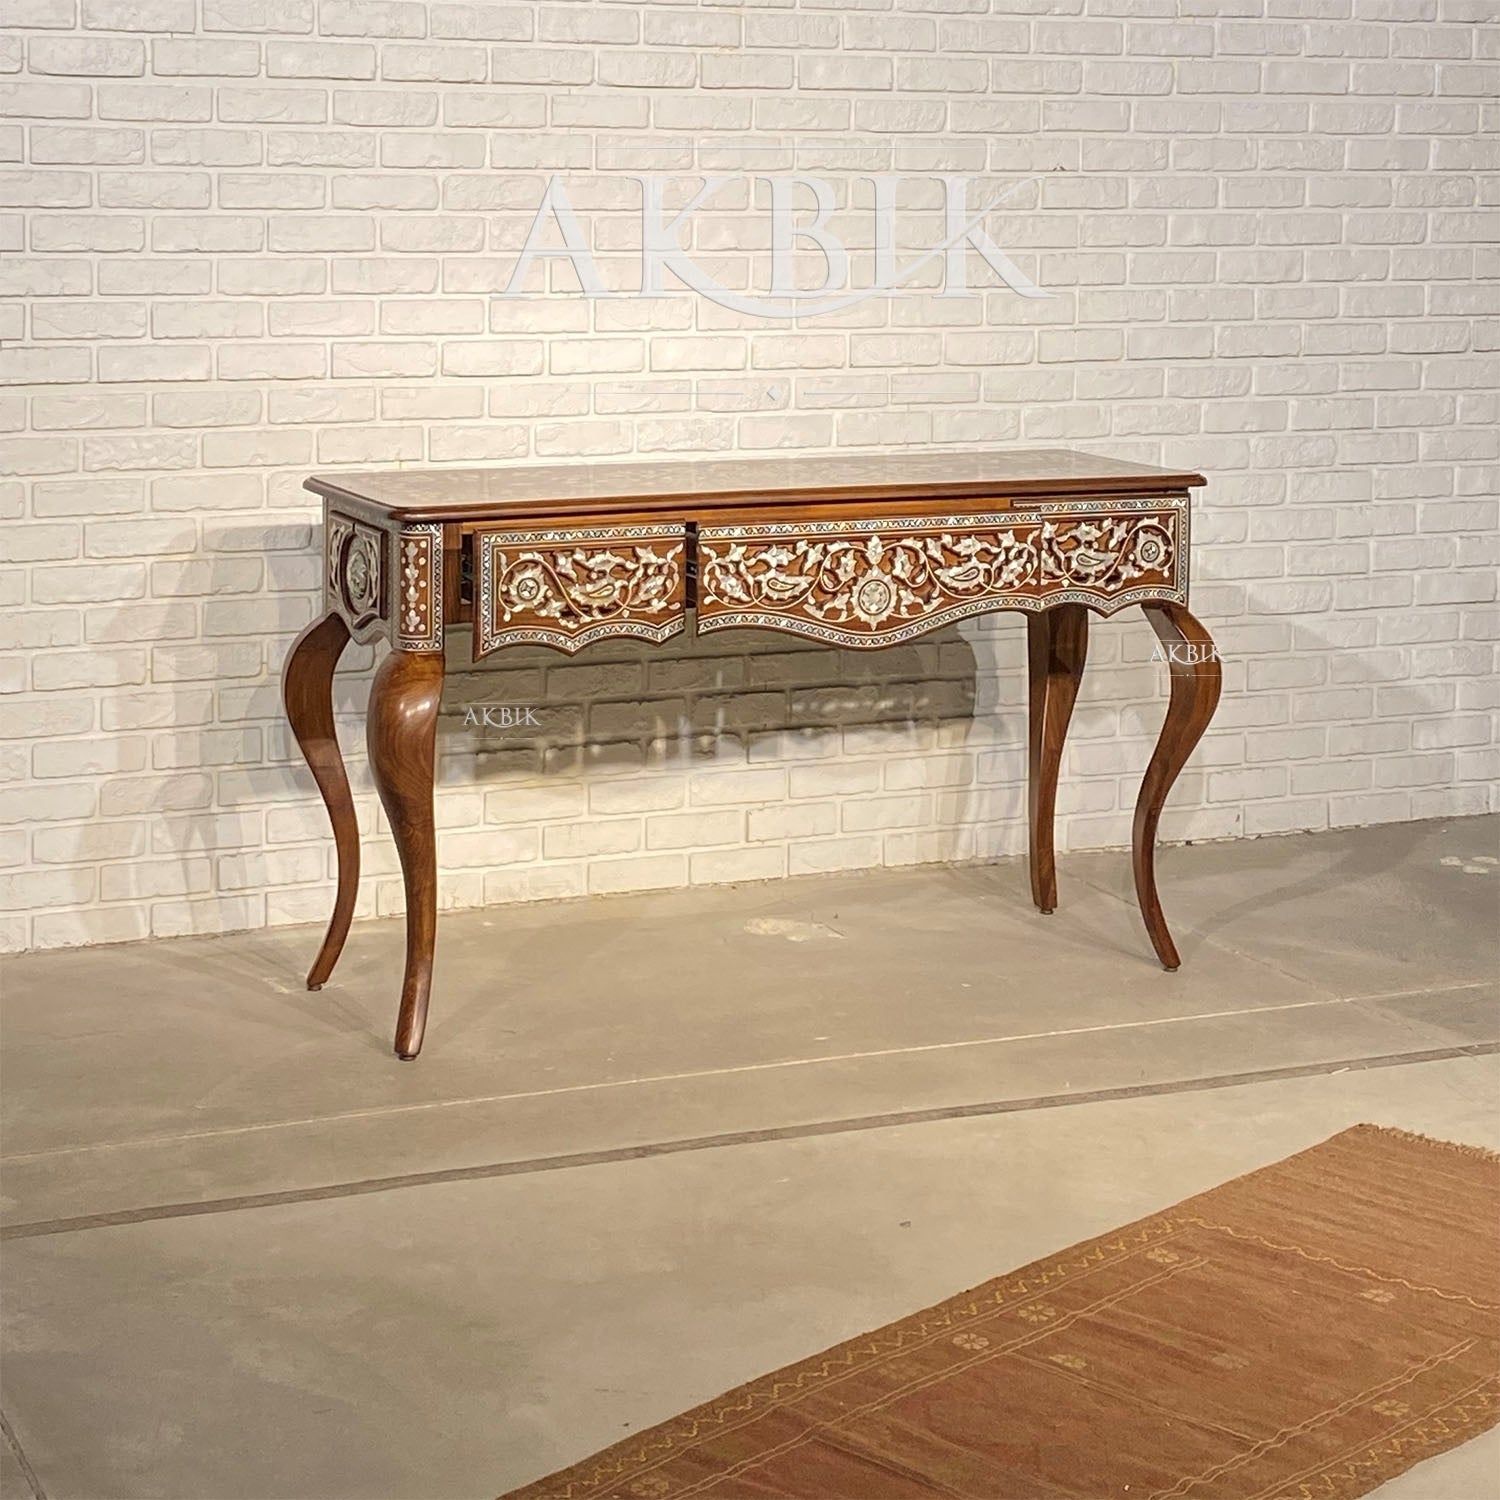 HASNA CONSOLE - AKBIK Furniture & Design